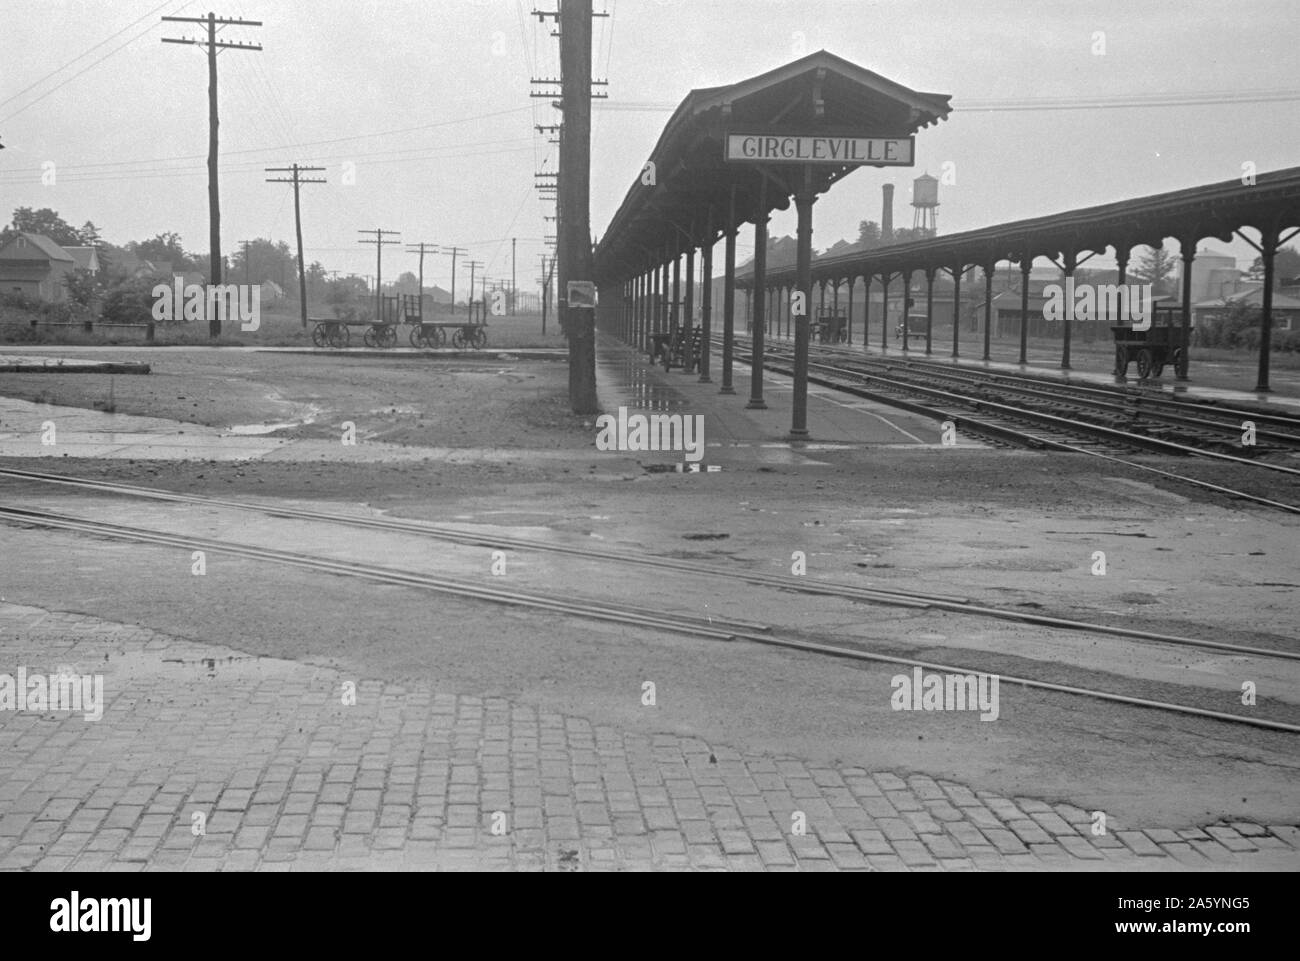 Stazione ferroviaria di Circleville, Ohio. Mostra le piattaforme deserta durante la grande depressione economica americana 1938 Foto Stock